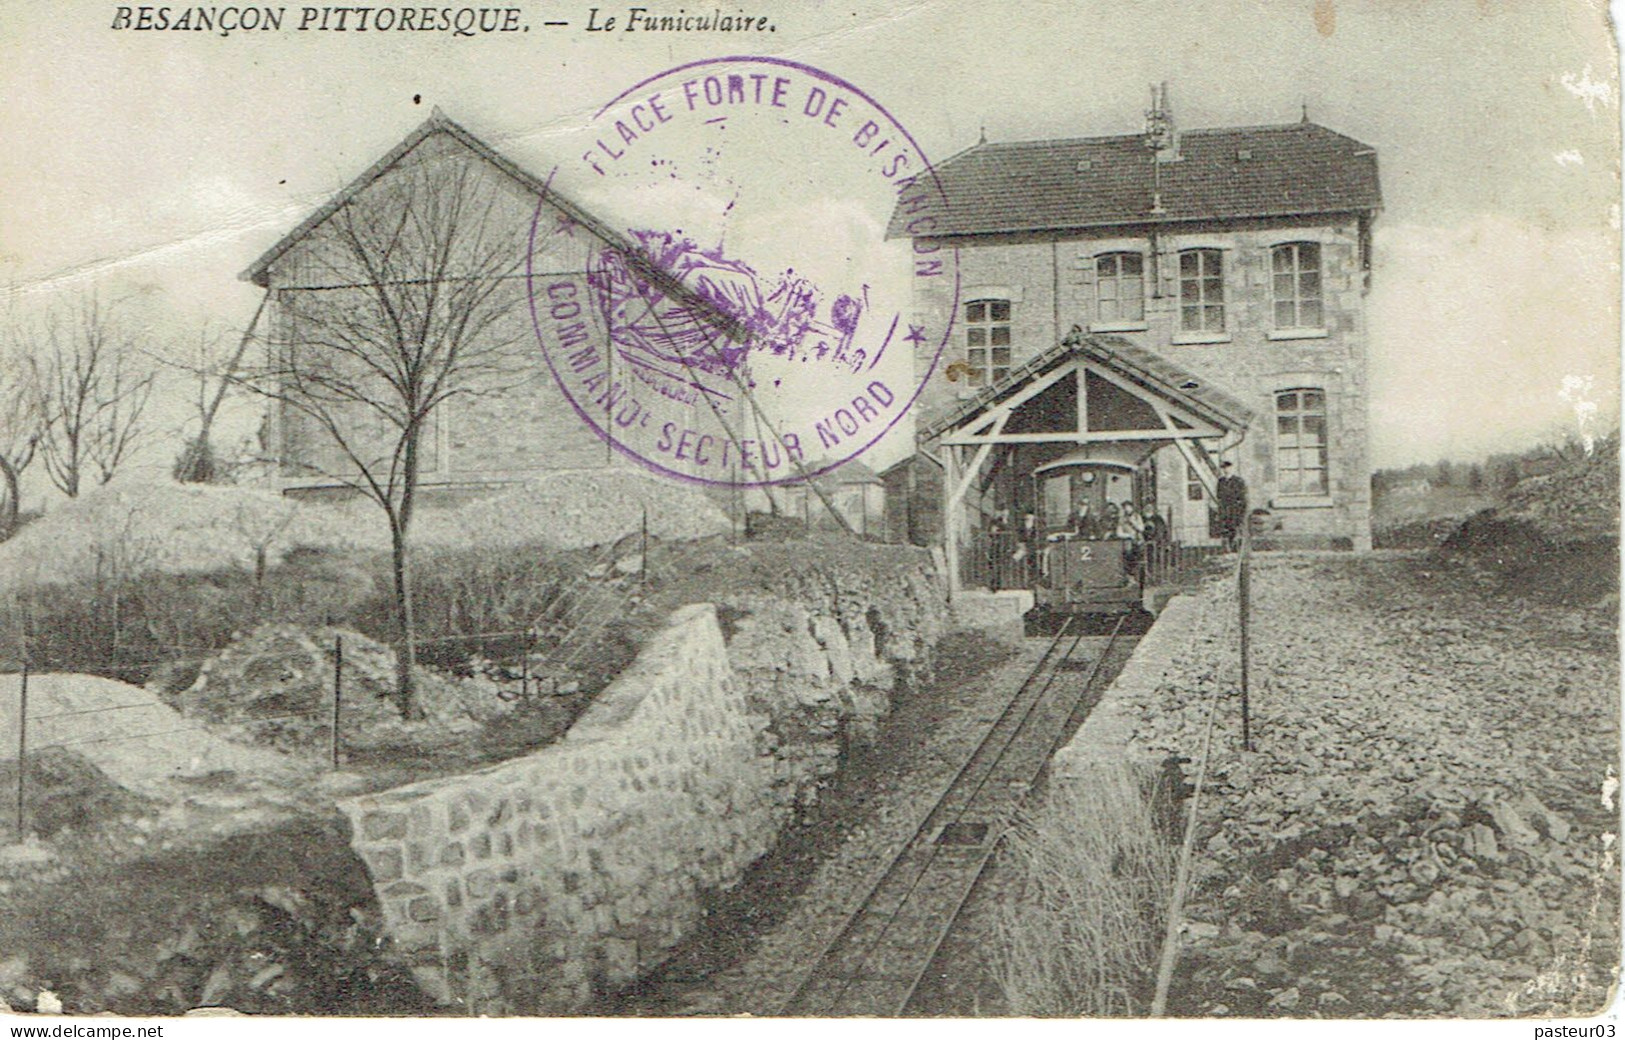 Place Forte De Besançon Commandement Secteur Nord Cachet De Besançon Charrais Du 5-11-1914 Sur CP - War Stamps